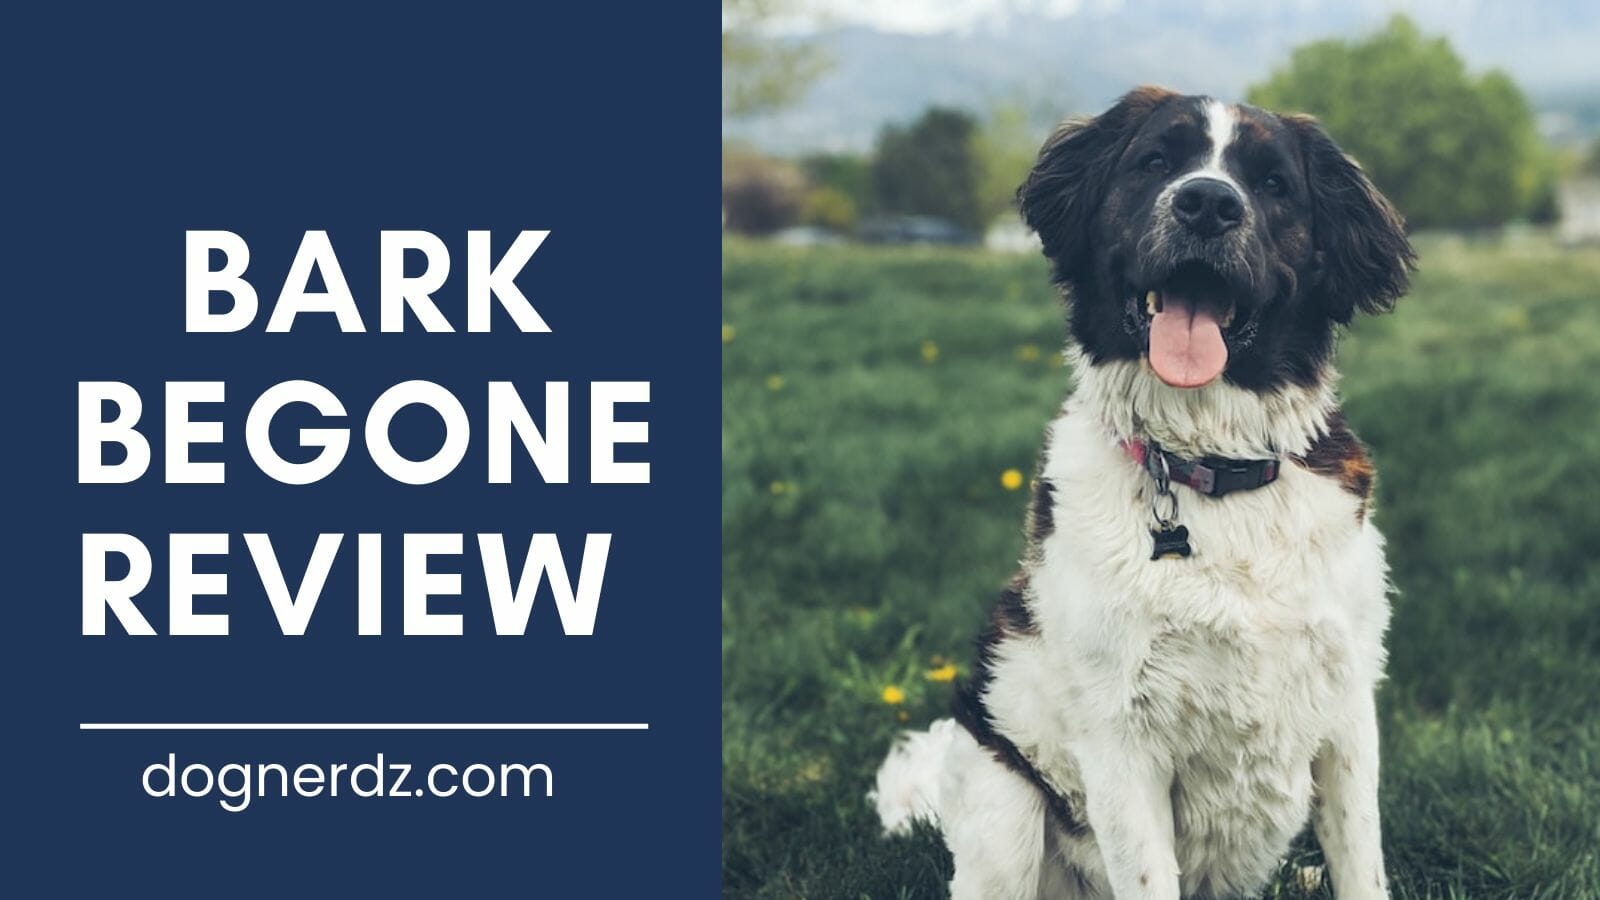 review of bark begone dog trainer